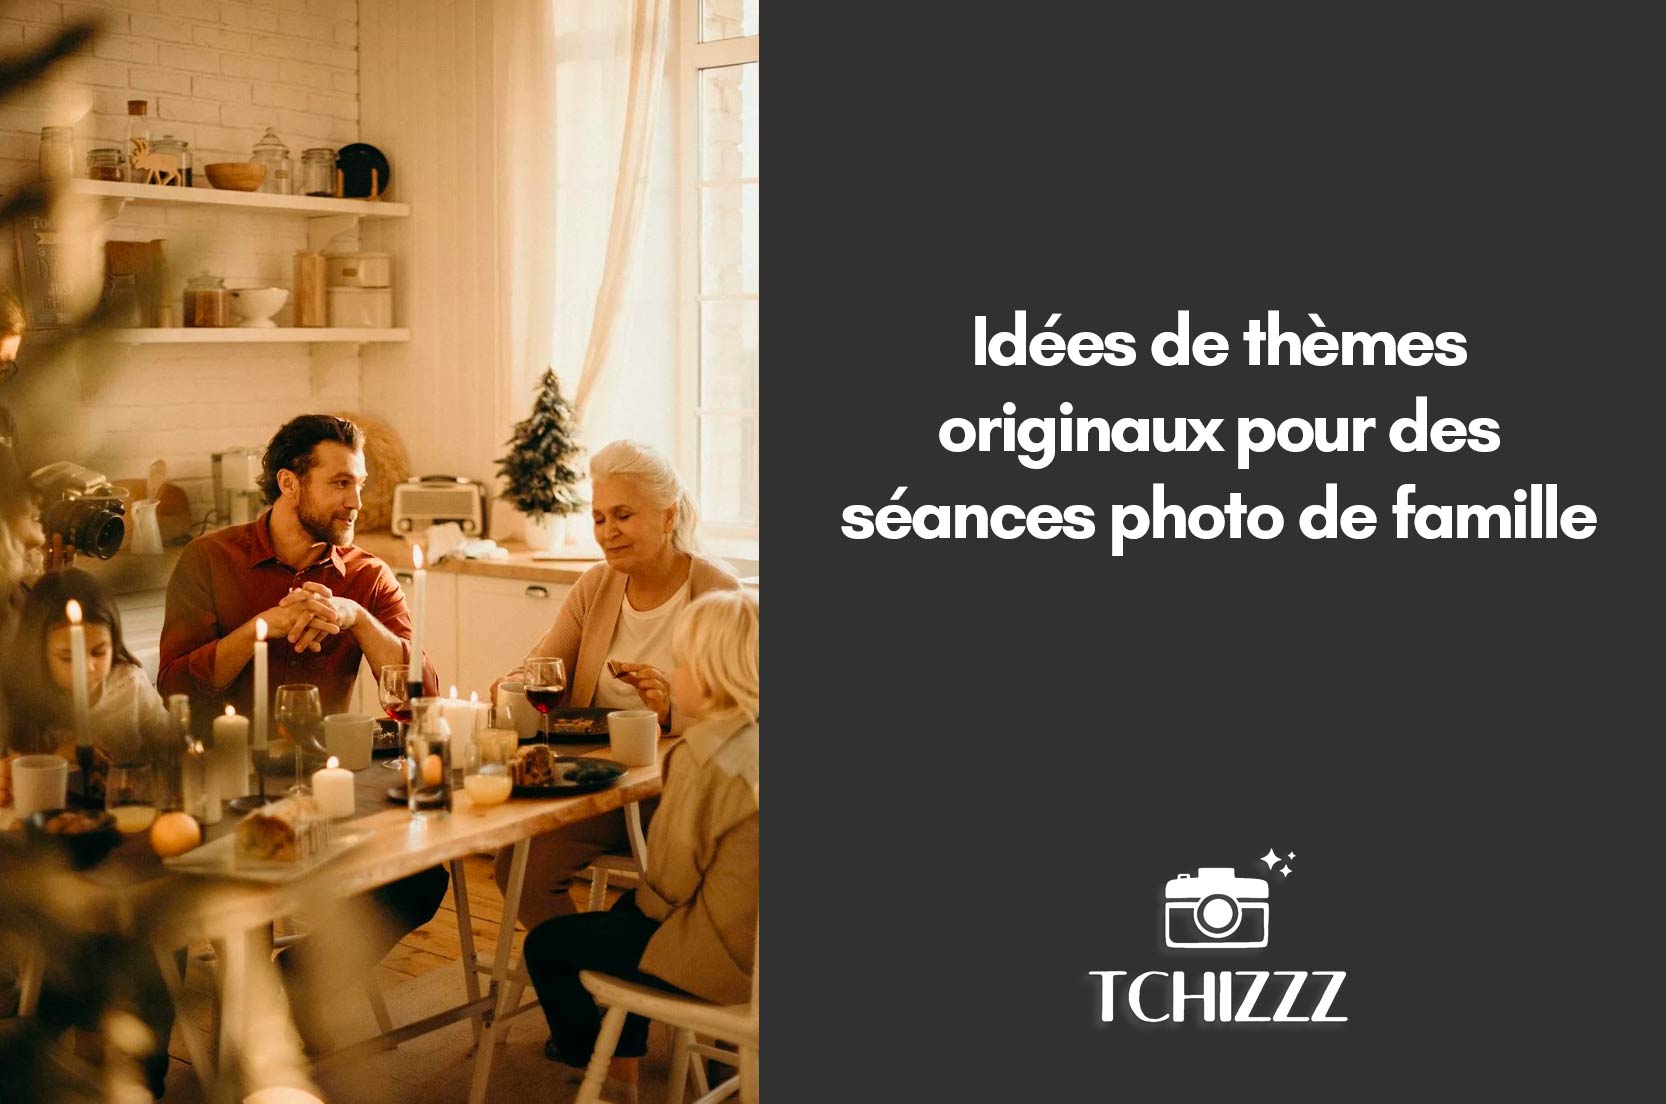 You are currently viewing Idées de thèmes originaux pour des séances photo de famille